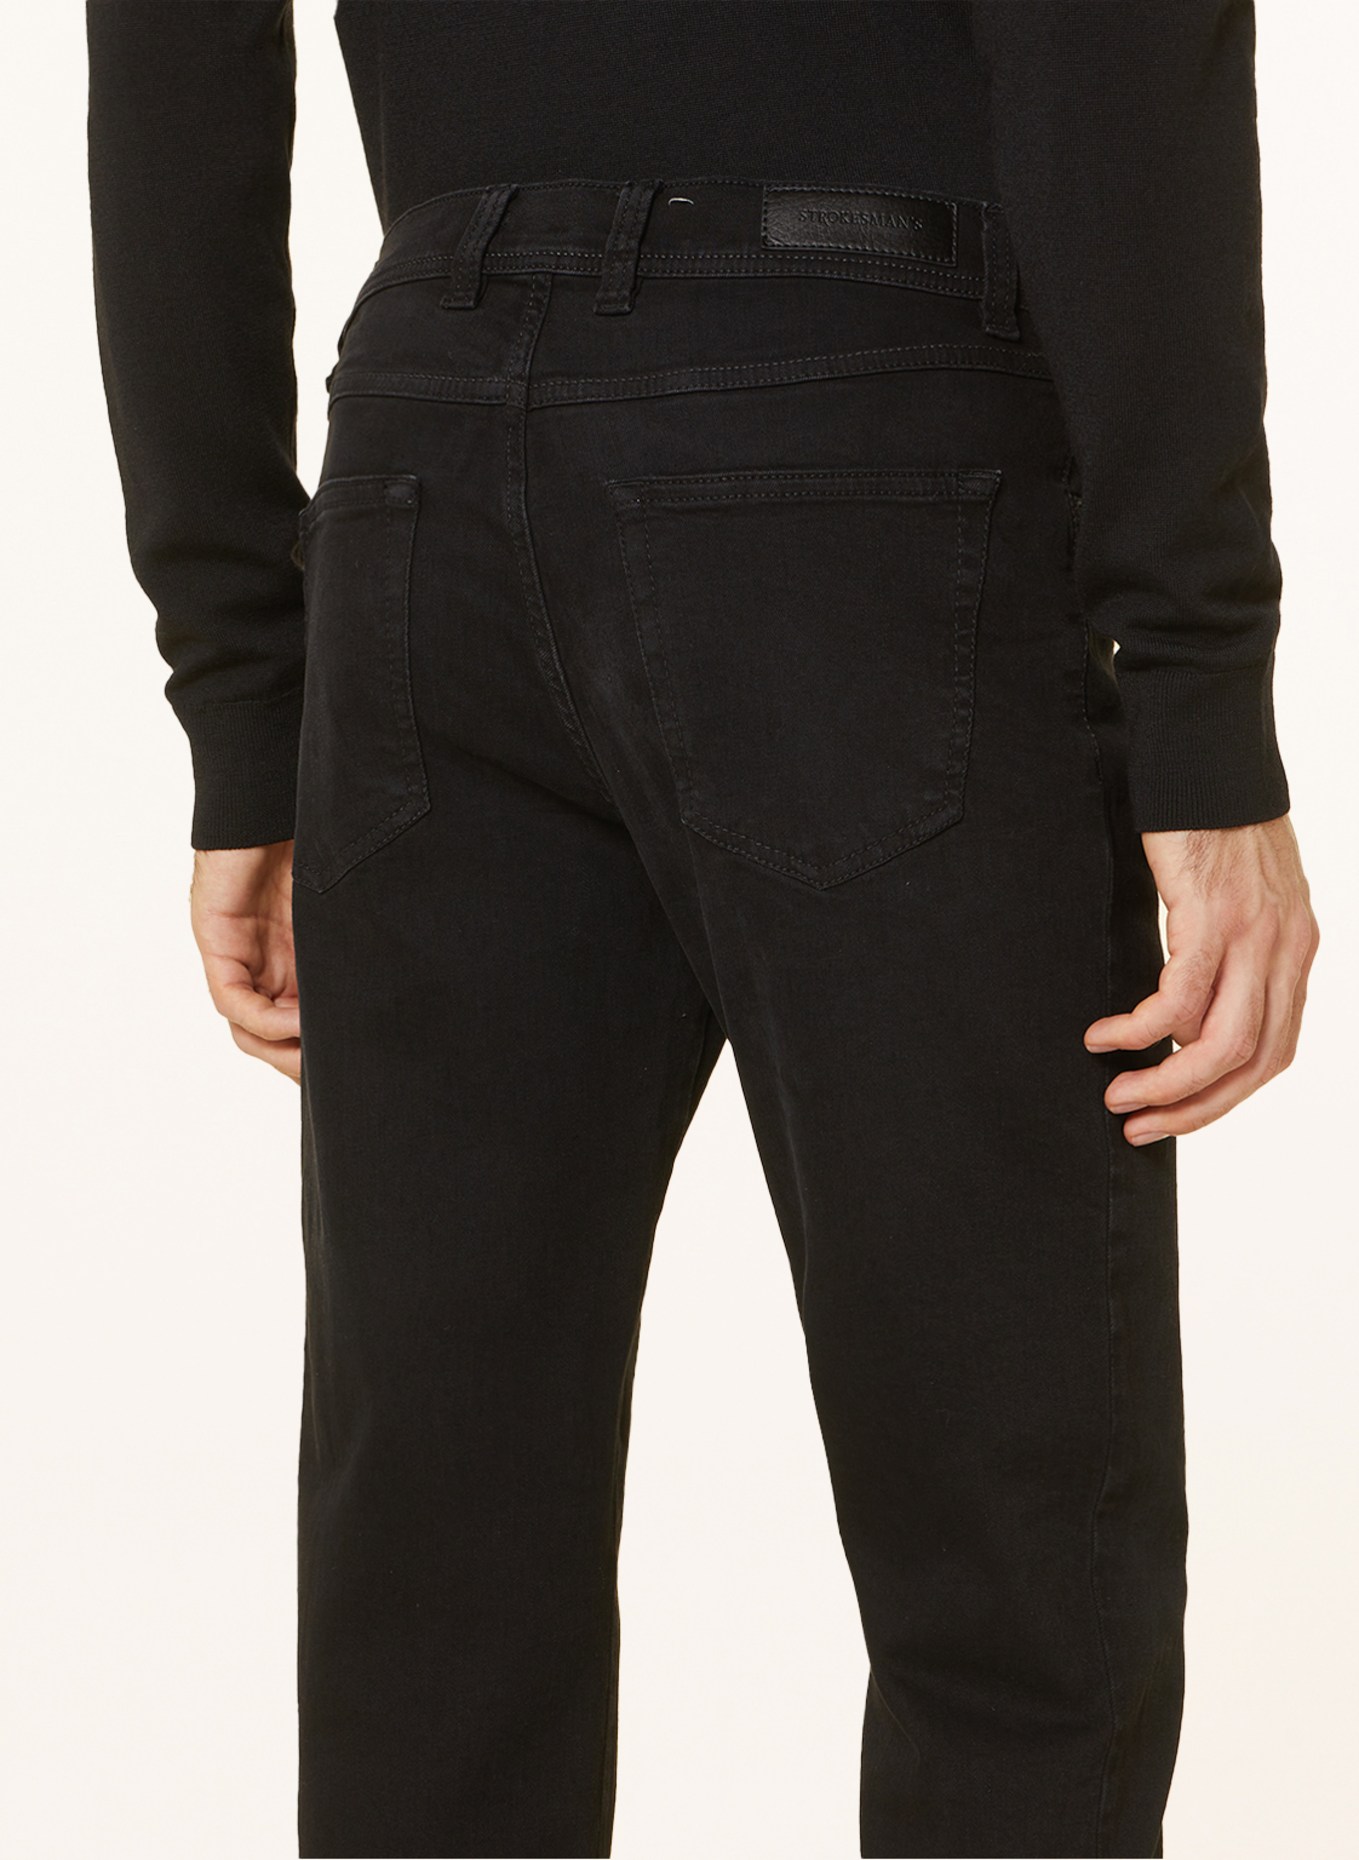 STROKESMAN'S Jeans Slim Fit, Farbe: 6000 black (Bild 6)